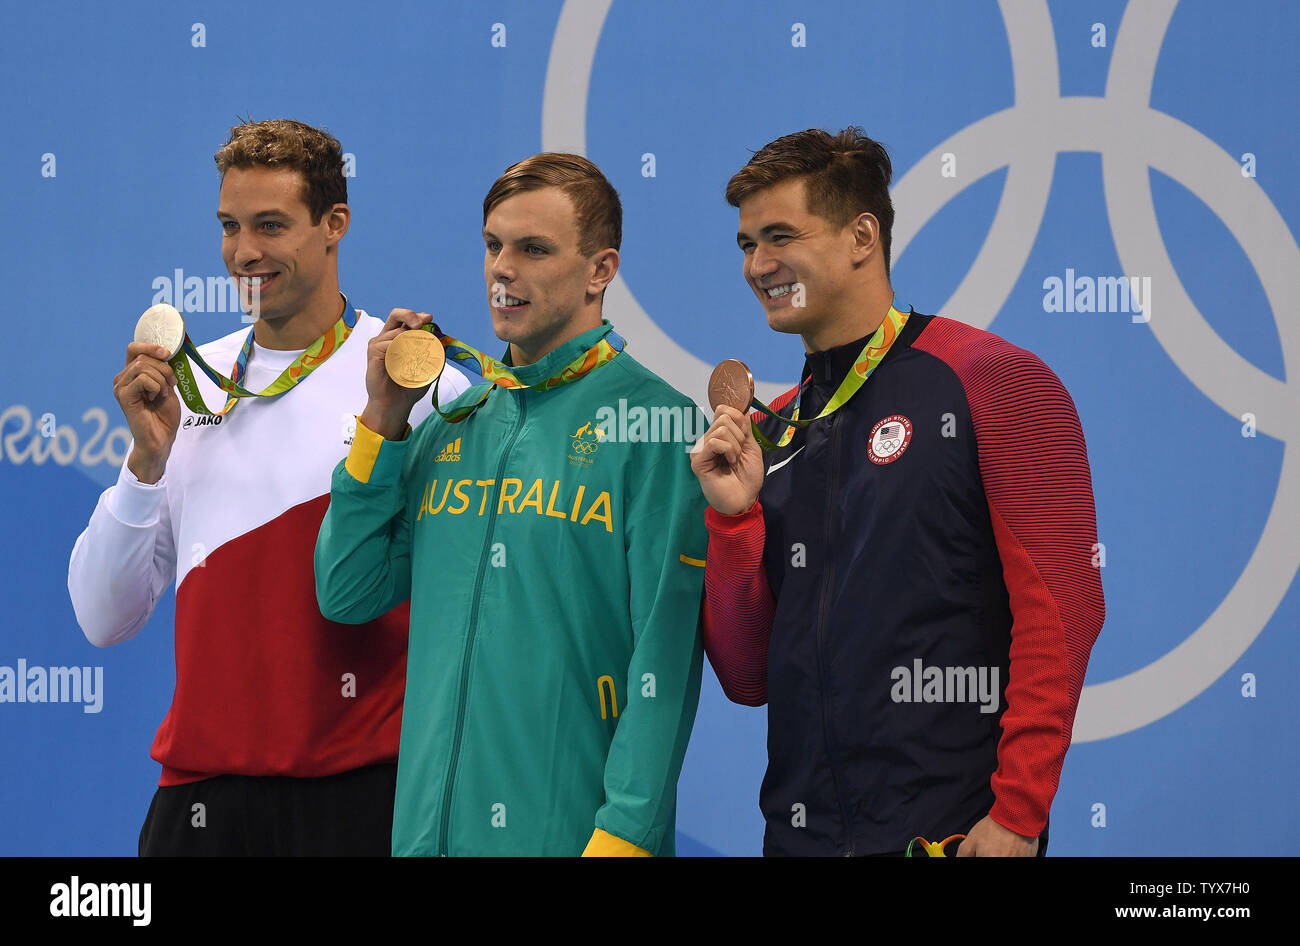 Pieter Timmers (BEL), Kyle Chalmers (AUS), et Nathan Adrian (USA) célèbrent leurs médailles dans l'épreuve du 100m nage libre aux Jeux olympiques de natation au stade des Jeux Olympiques de Rio 2016 à Rio de Janeiro, Brésil, le 10 août 2016. Photo de Richard Ellis/UPI. Banque D'Images